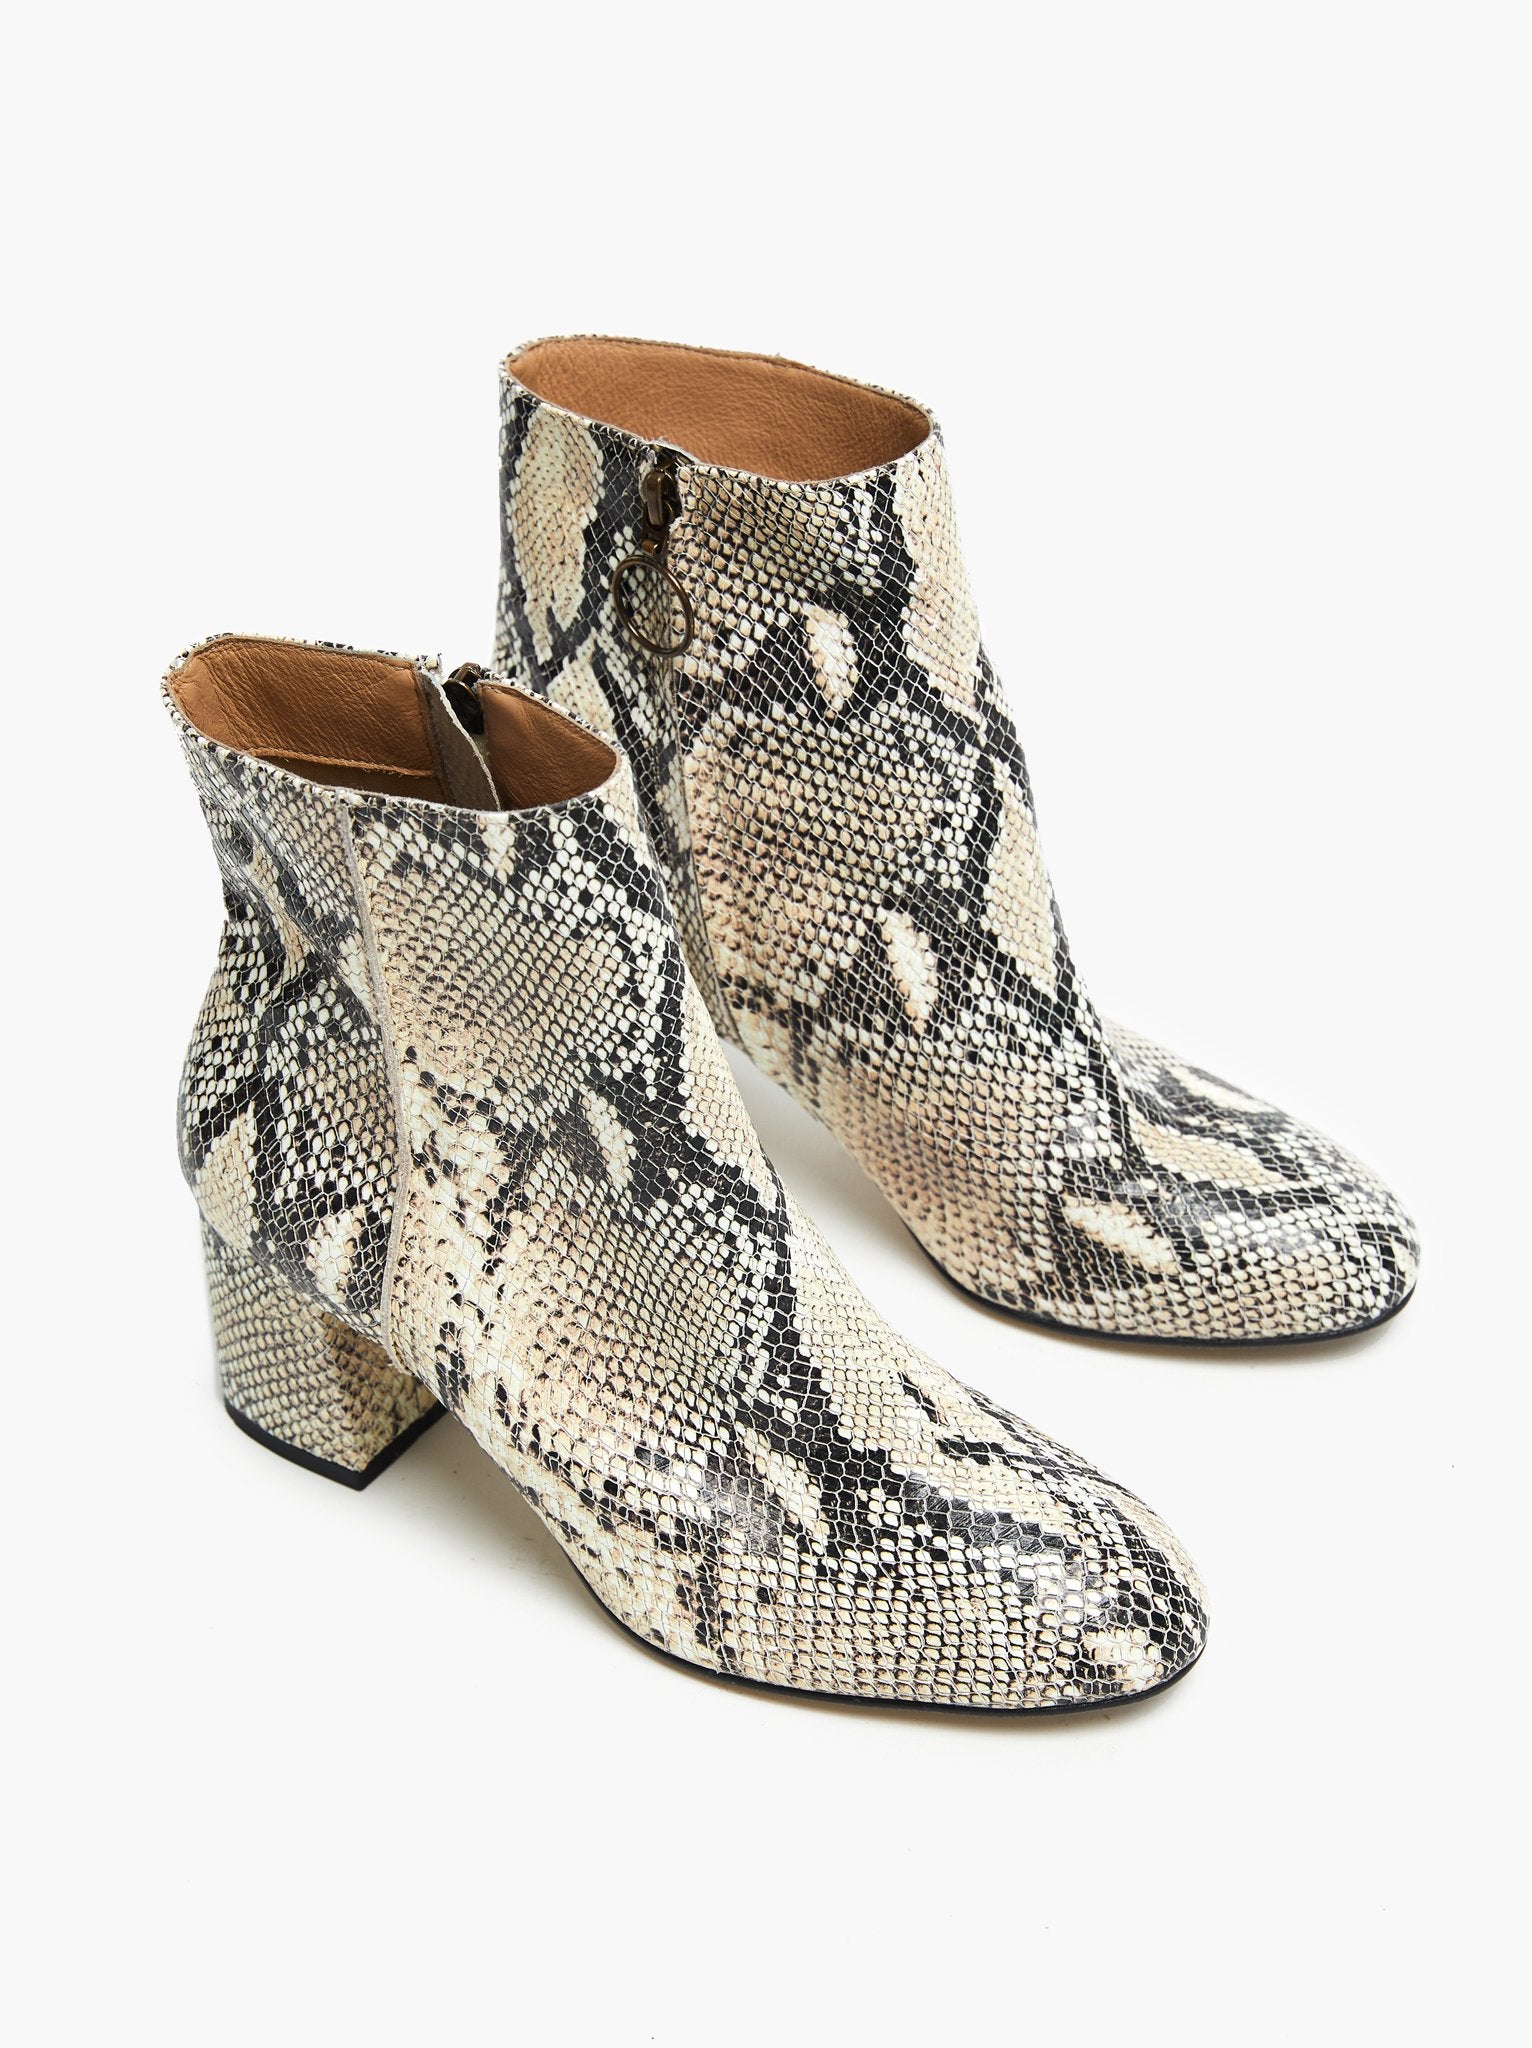 celine snake boots